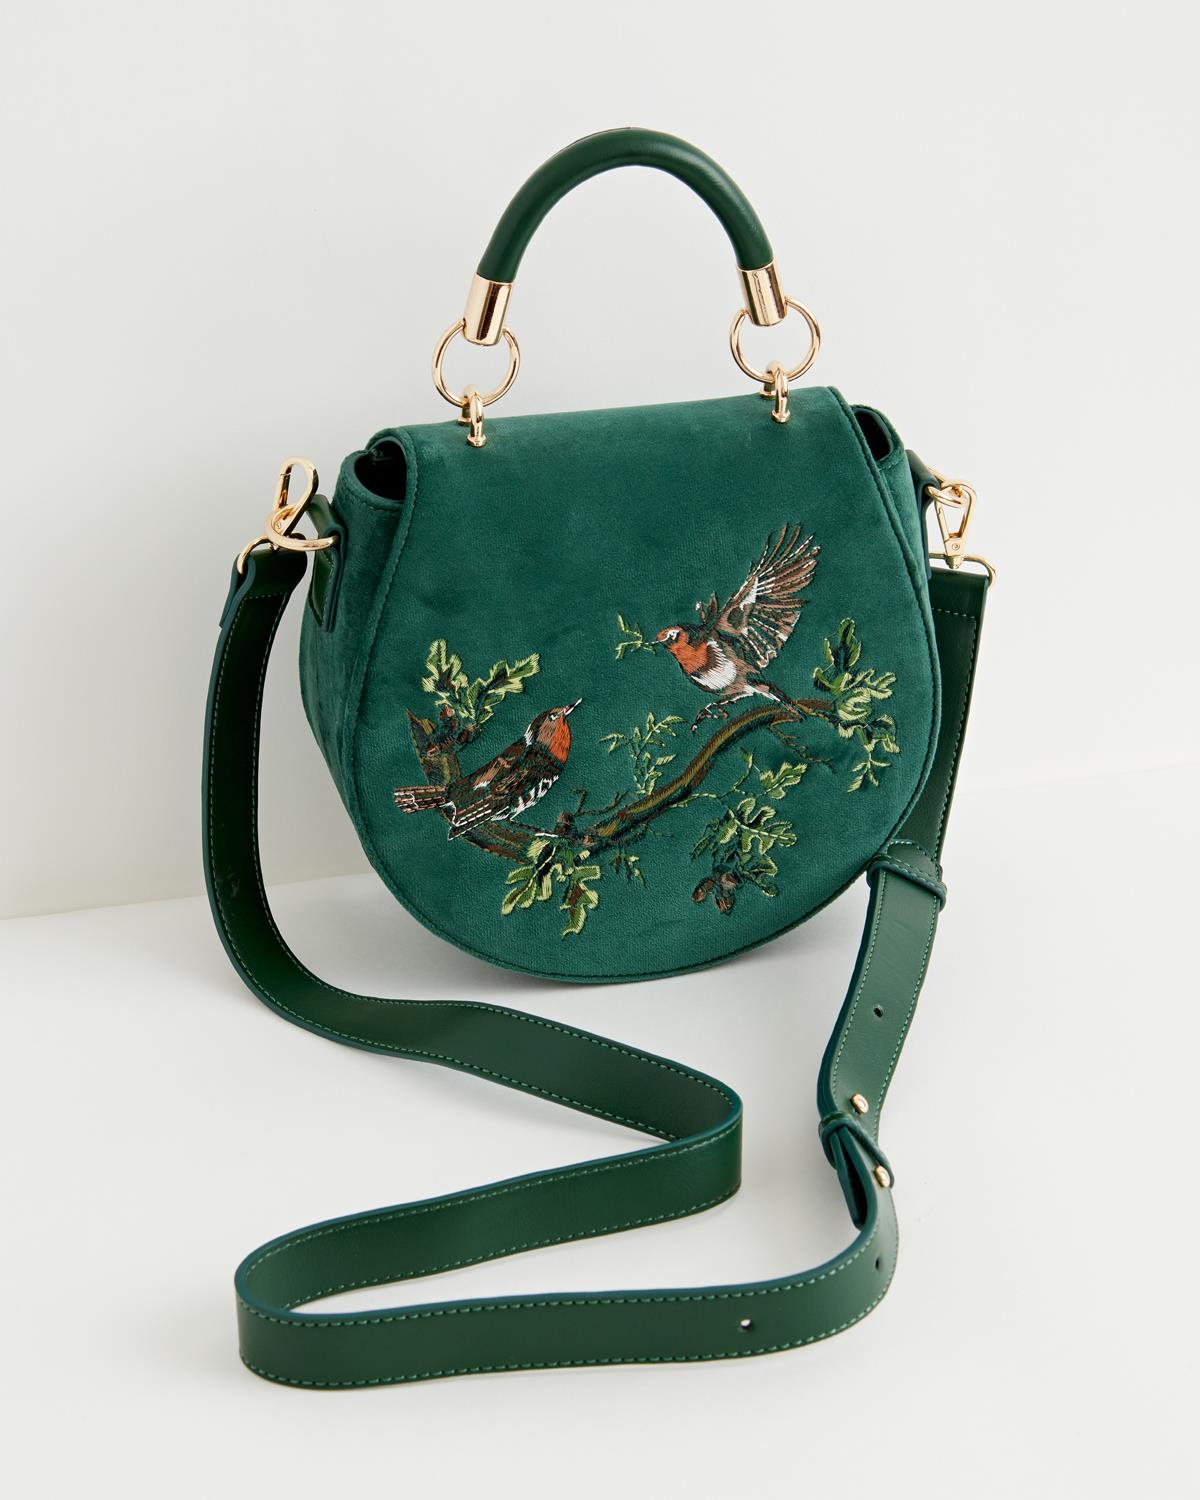 Fable Robin Love Embroidered Saddle Bag Fern Green Velvet